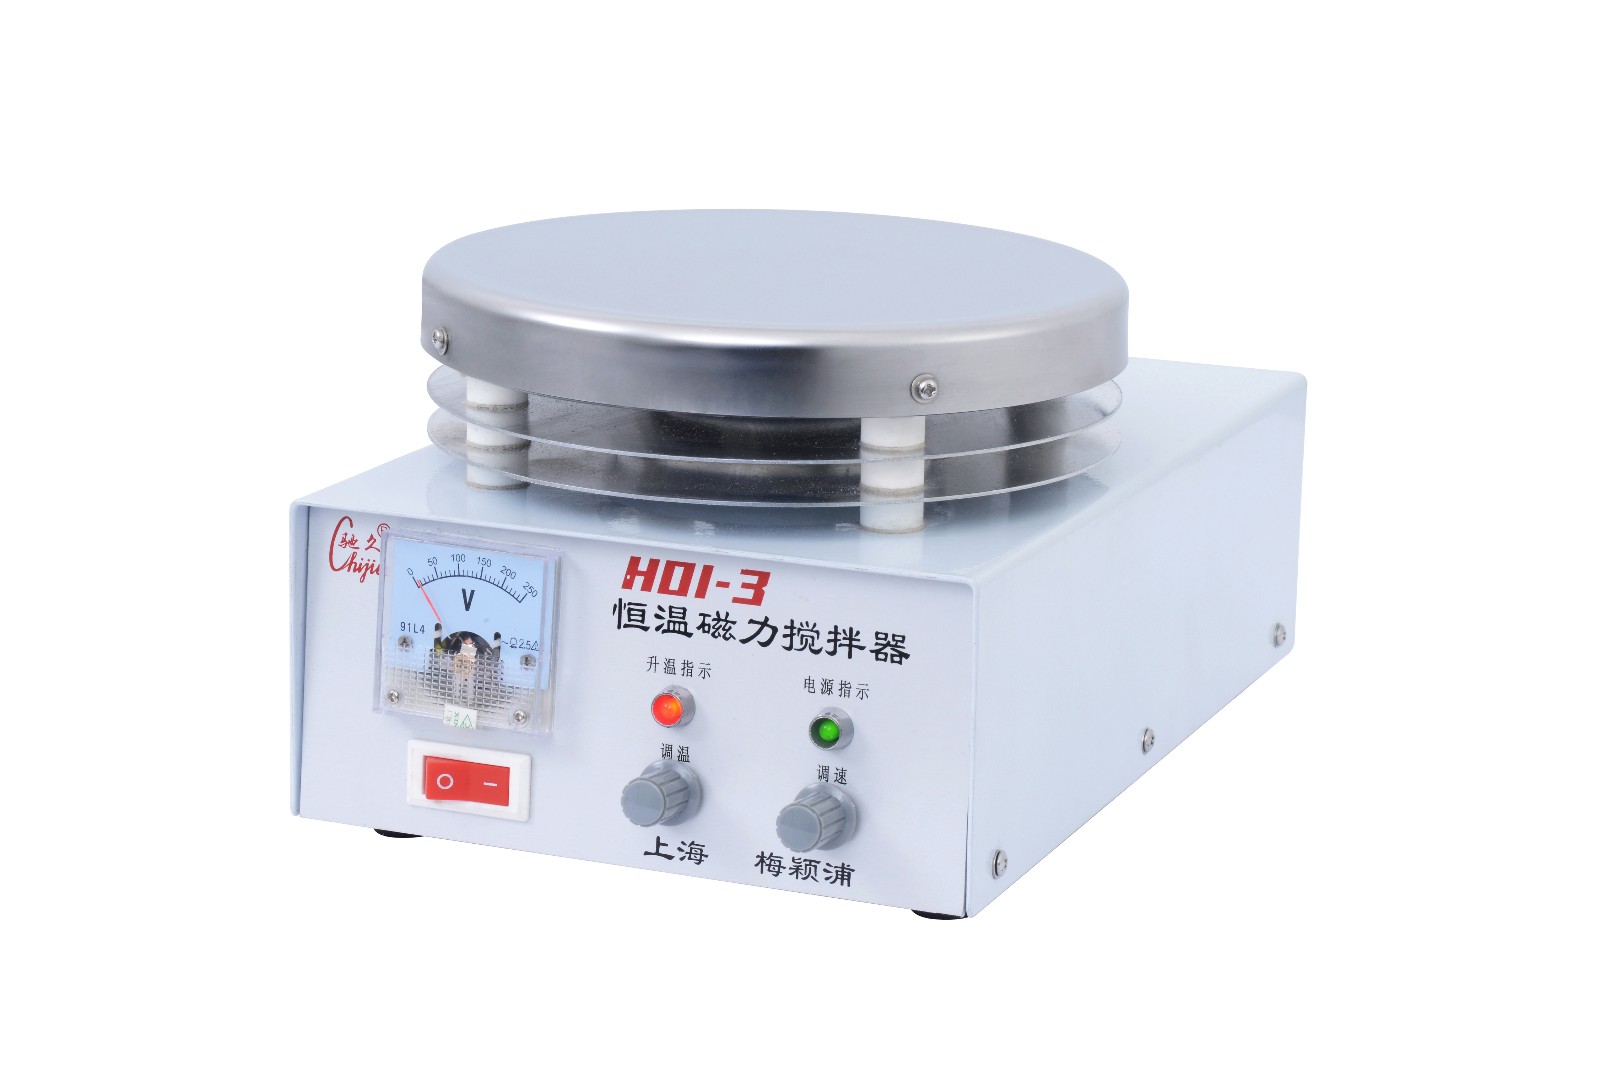 梅颖浦磁力搅拌器H01-3